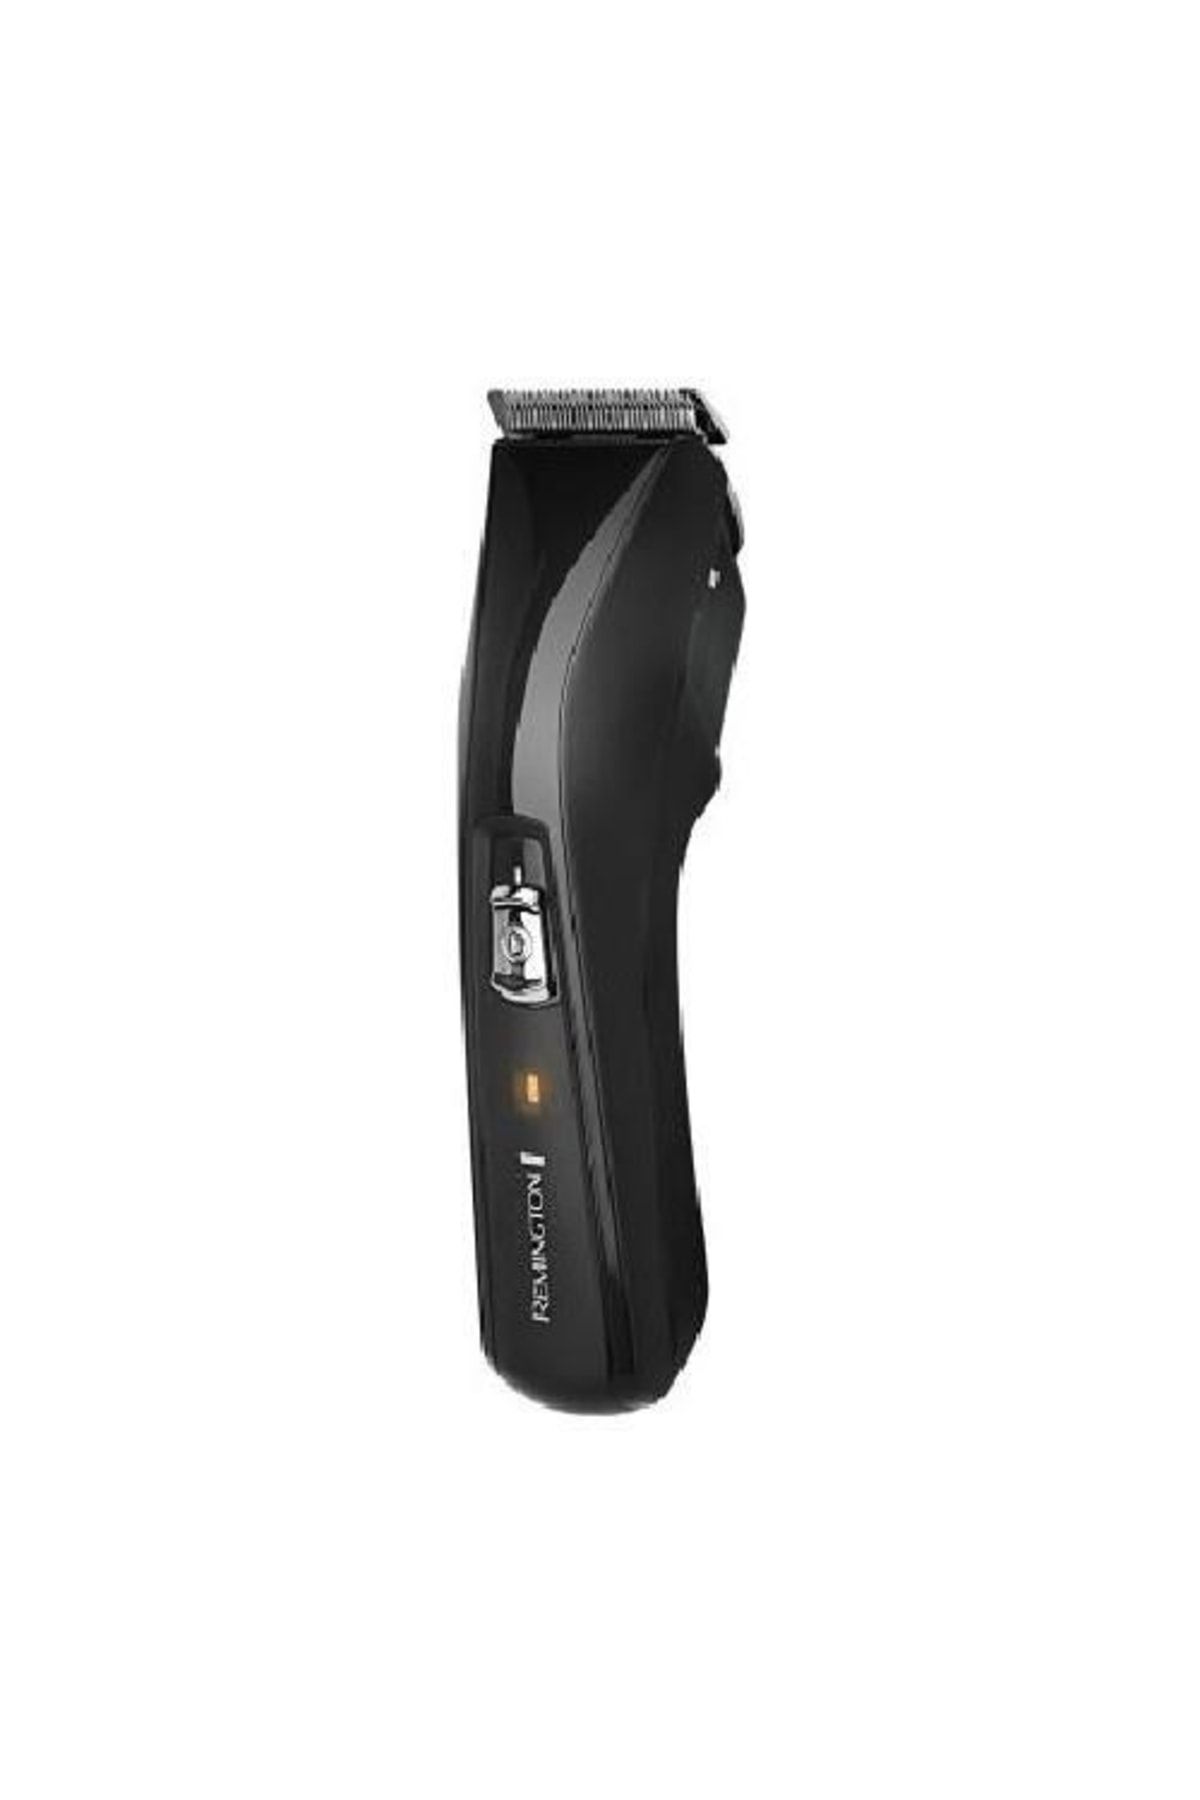 Remington Saç-Sakal Hc5150 Pro Power Serisi Şarjlı Saç Kesme Kuru 2 Yıl Yok Siyah Kablosuz 1-3